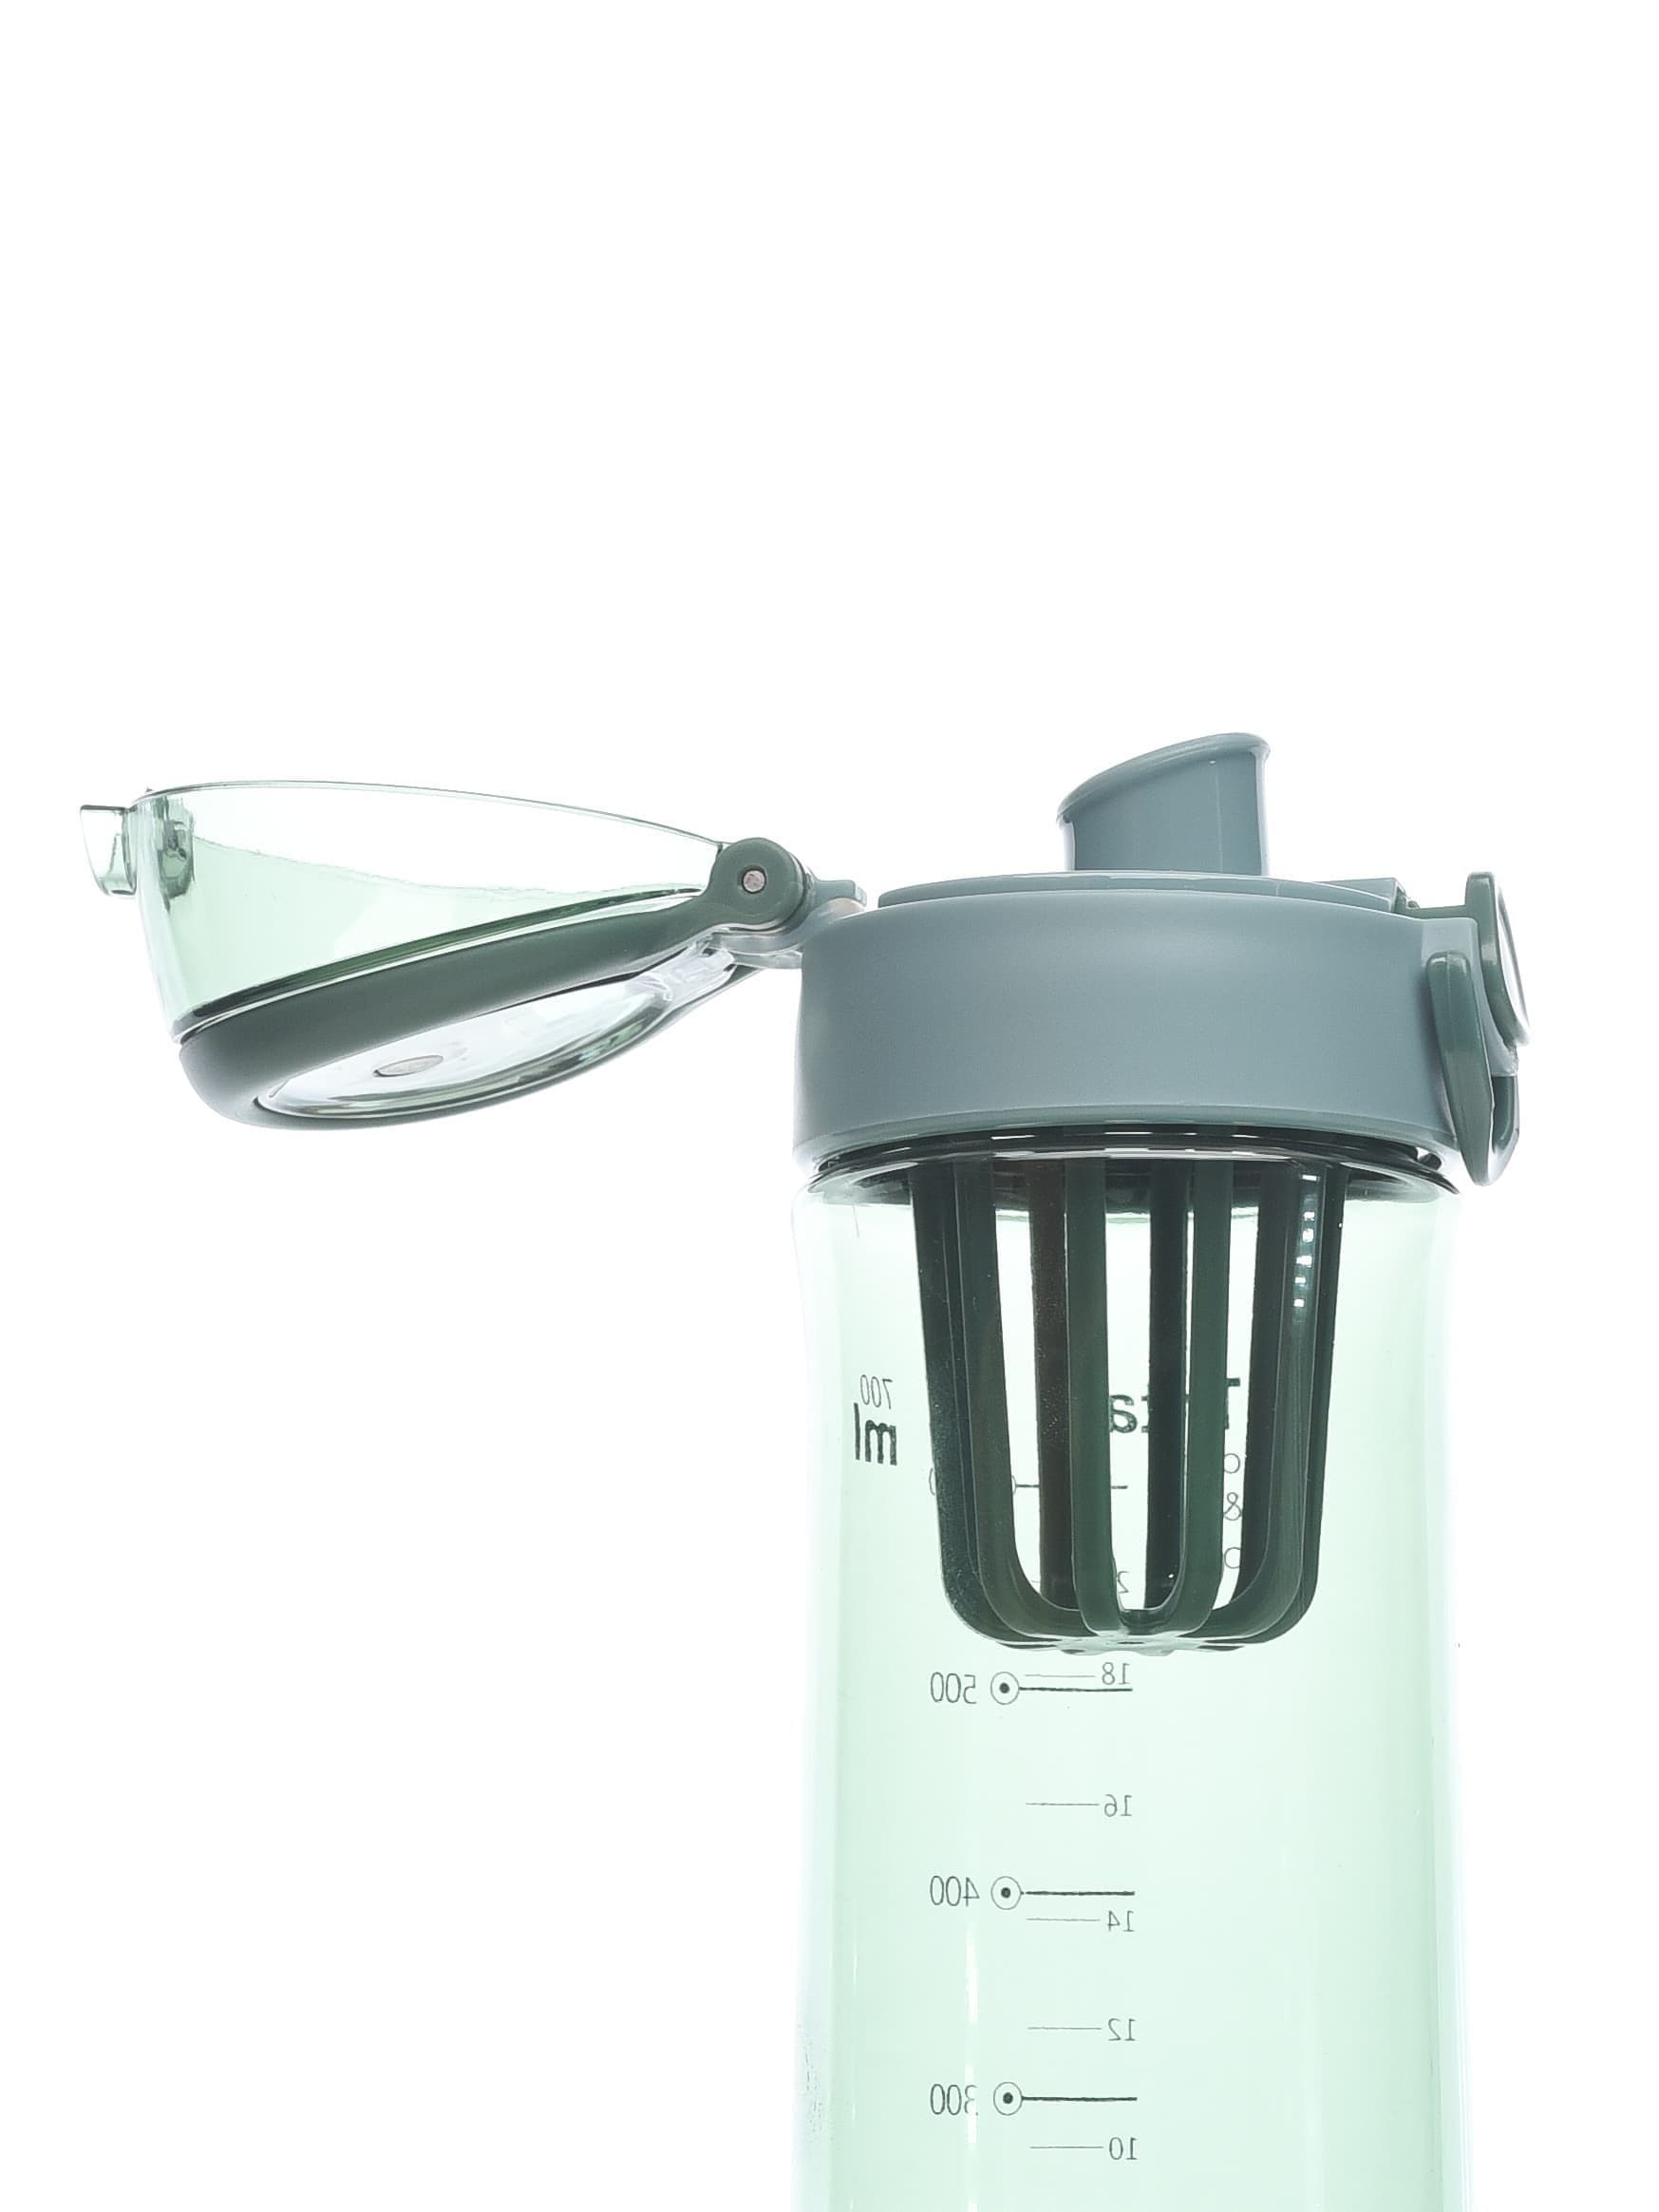 Бутылка для воды Diller D38-700 ml (Зеленый) фото